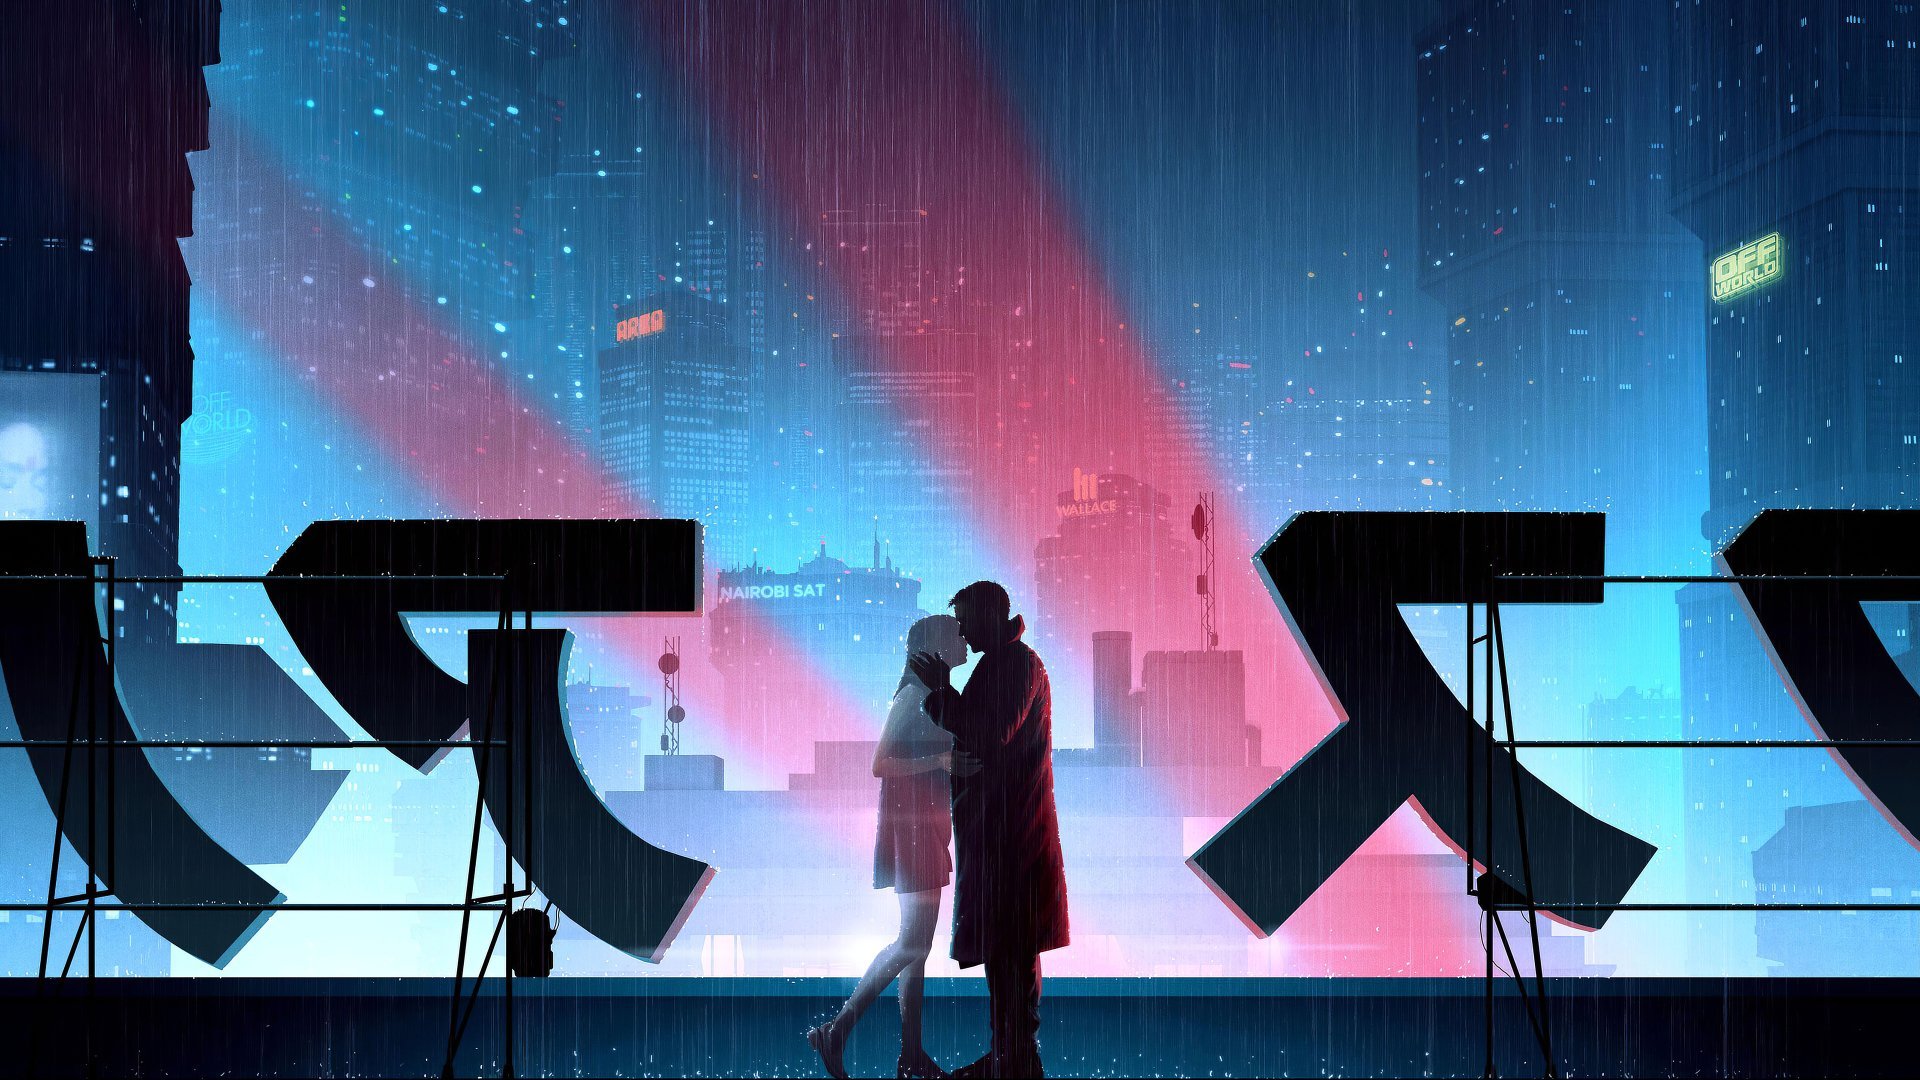 Blade Runner best background